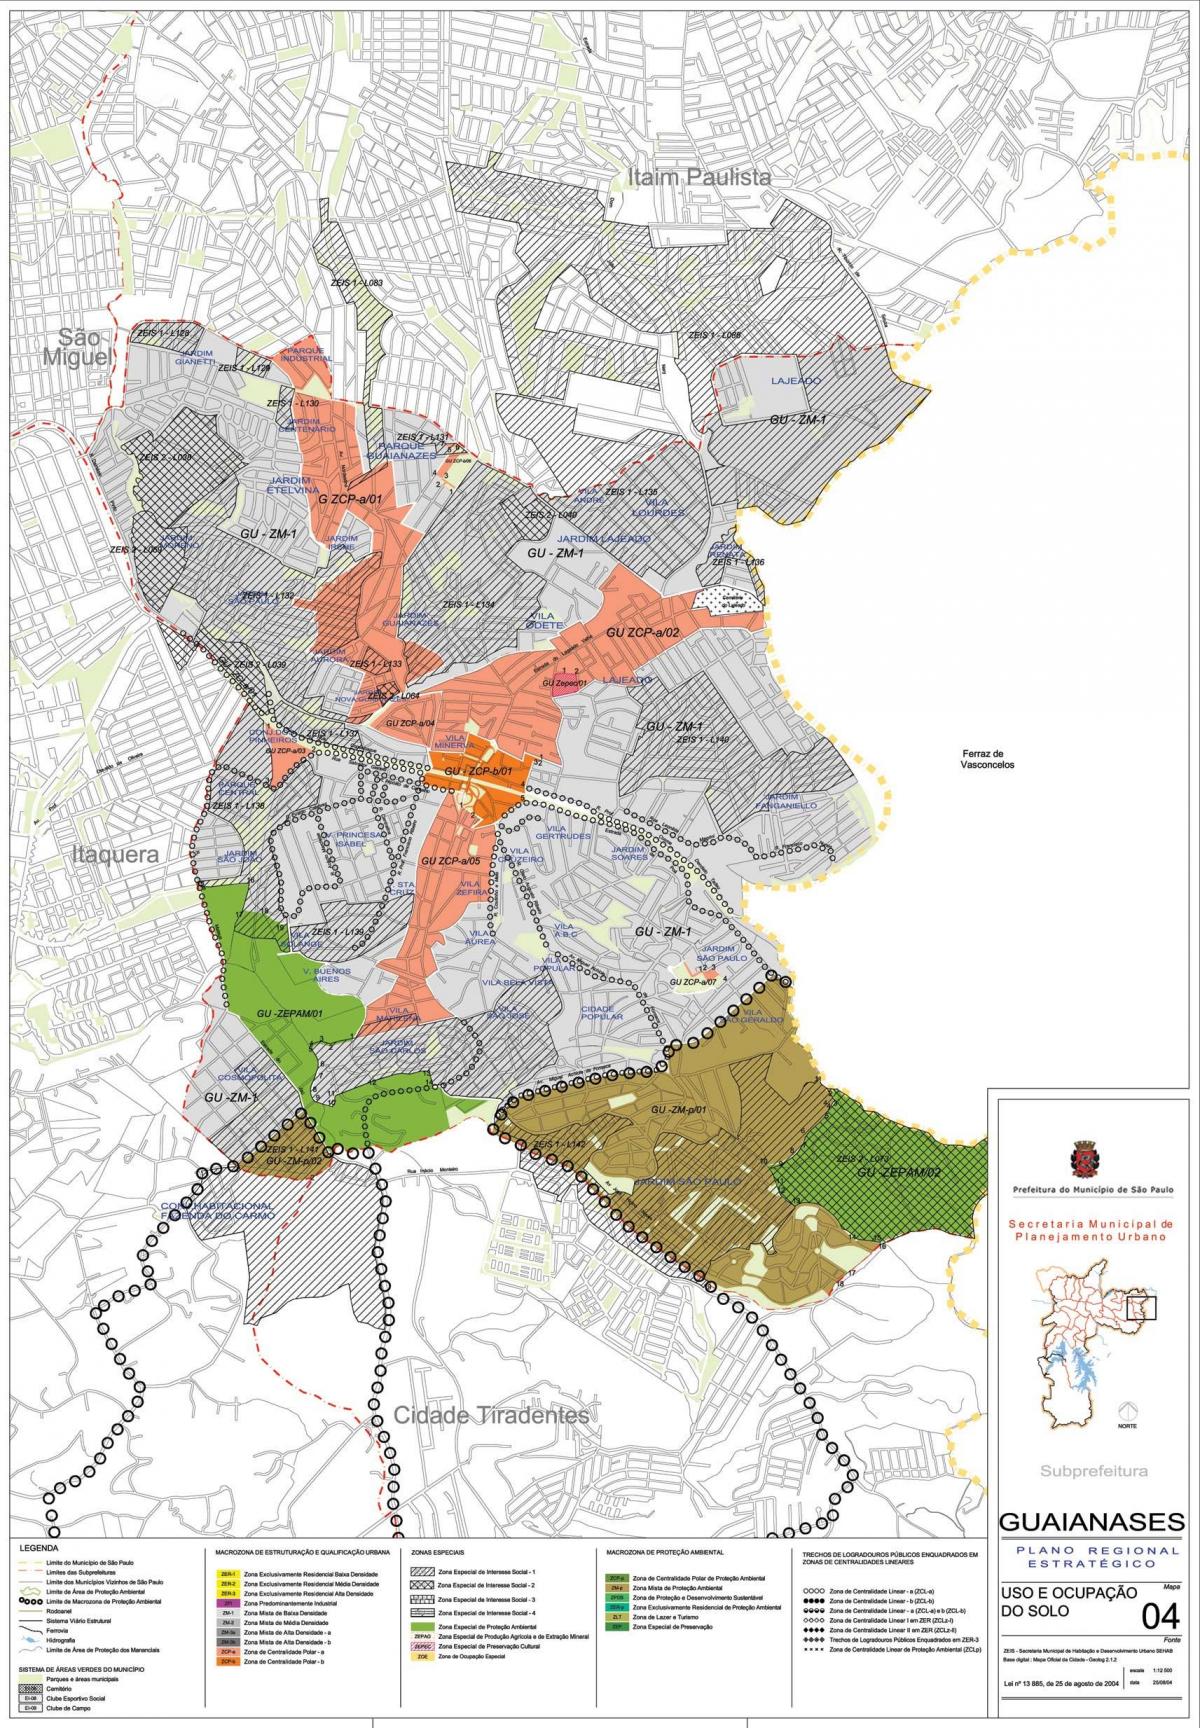 Kort over Guaianases São Paulo - Besættelse af jord